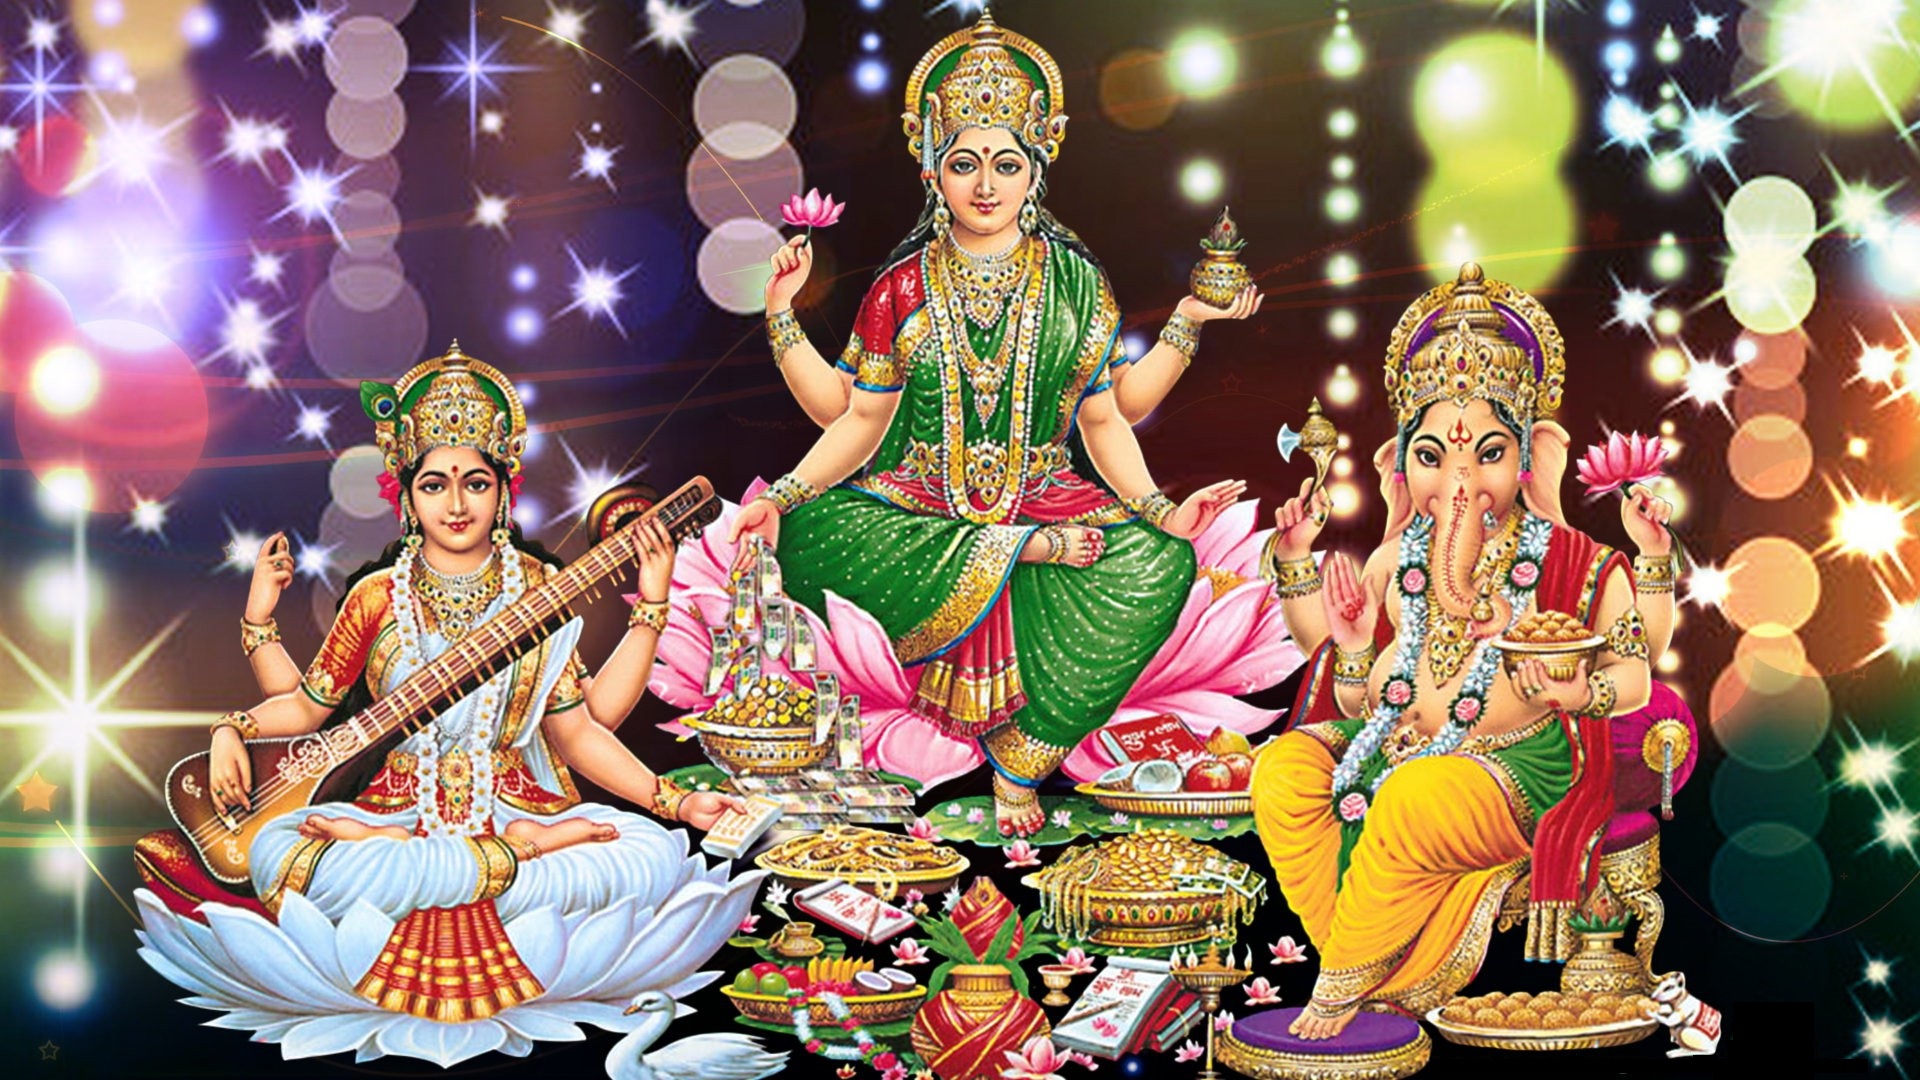 Goddess Lakshmi Ganesh And Saraswati Wallpapers - Lakshmi ...